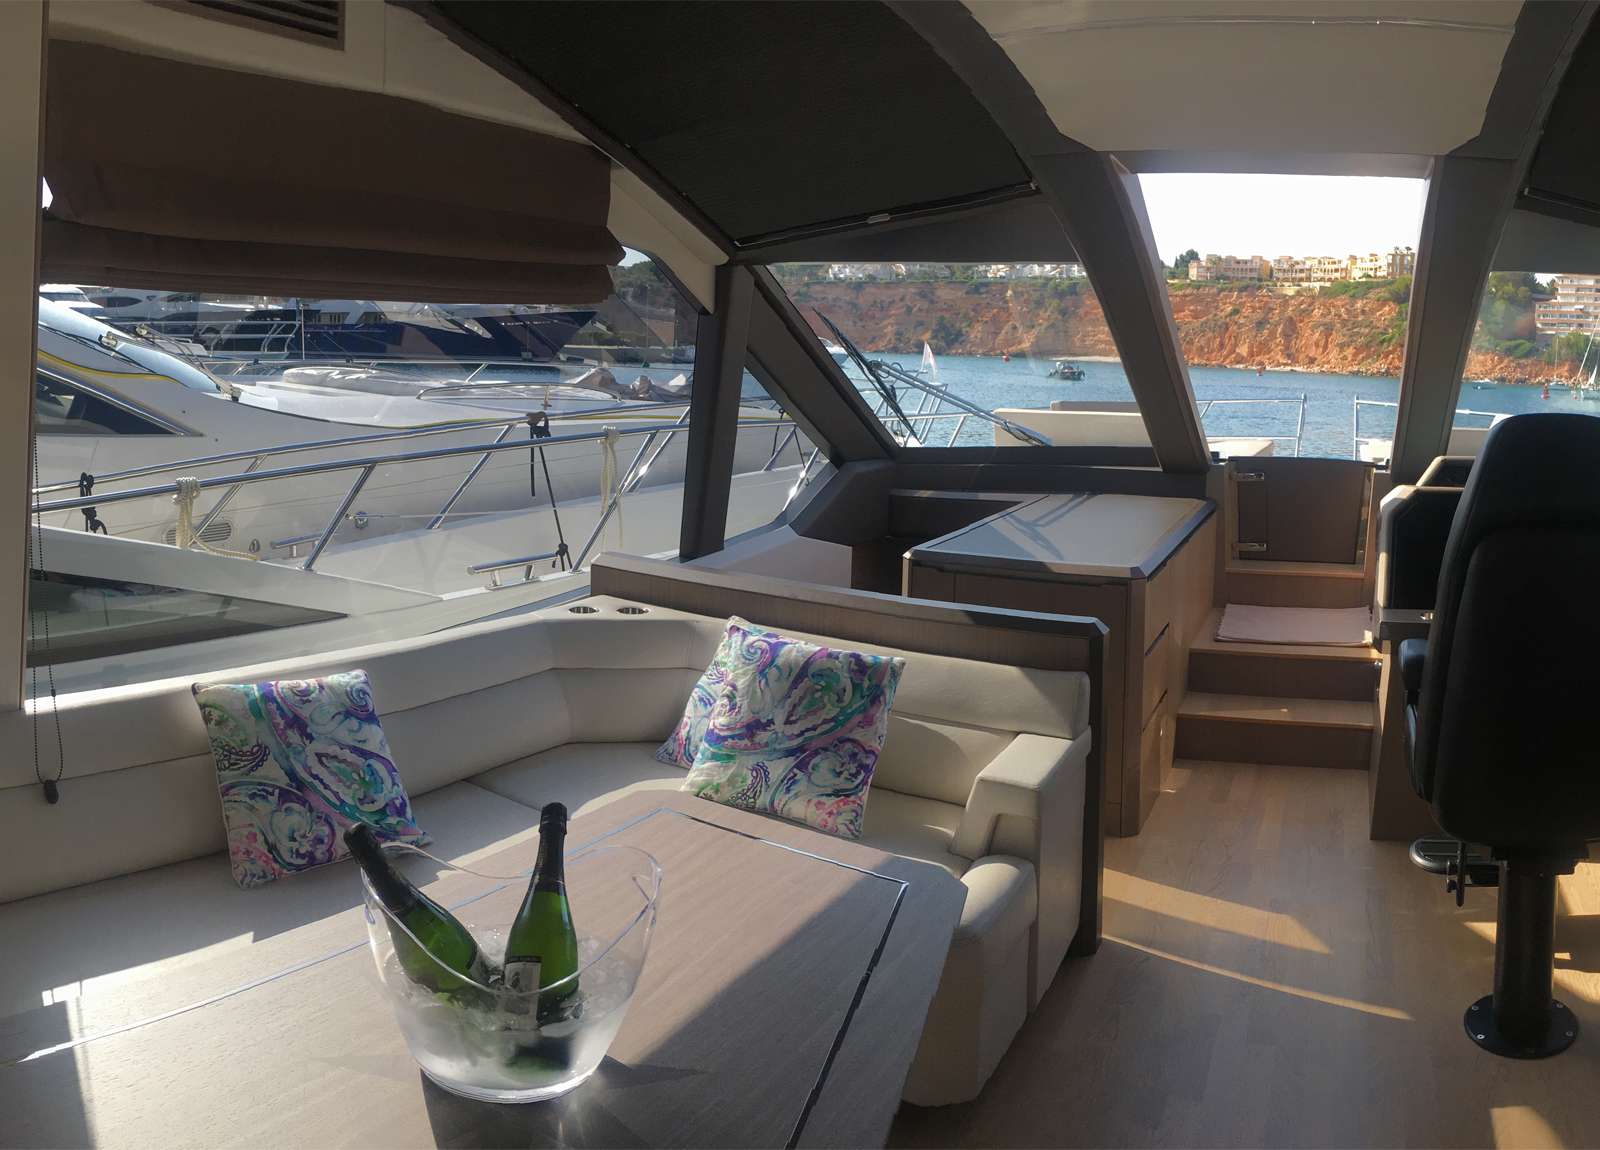 lounge luxury yacht galeon 640 fly habana iv balearic islands